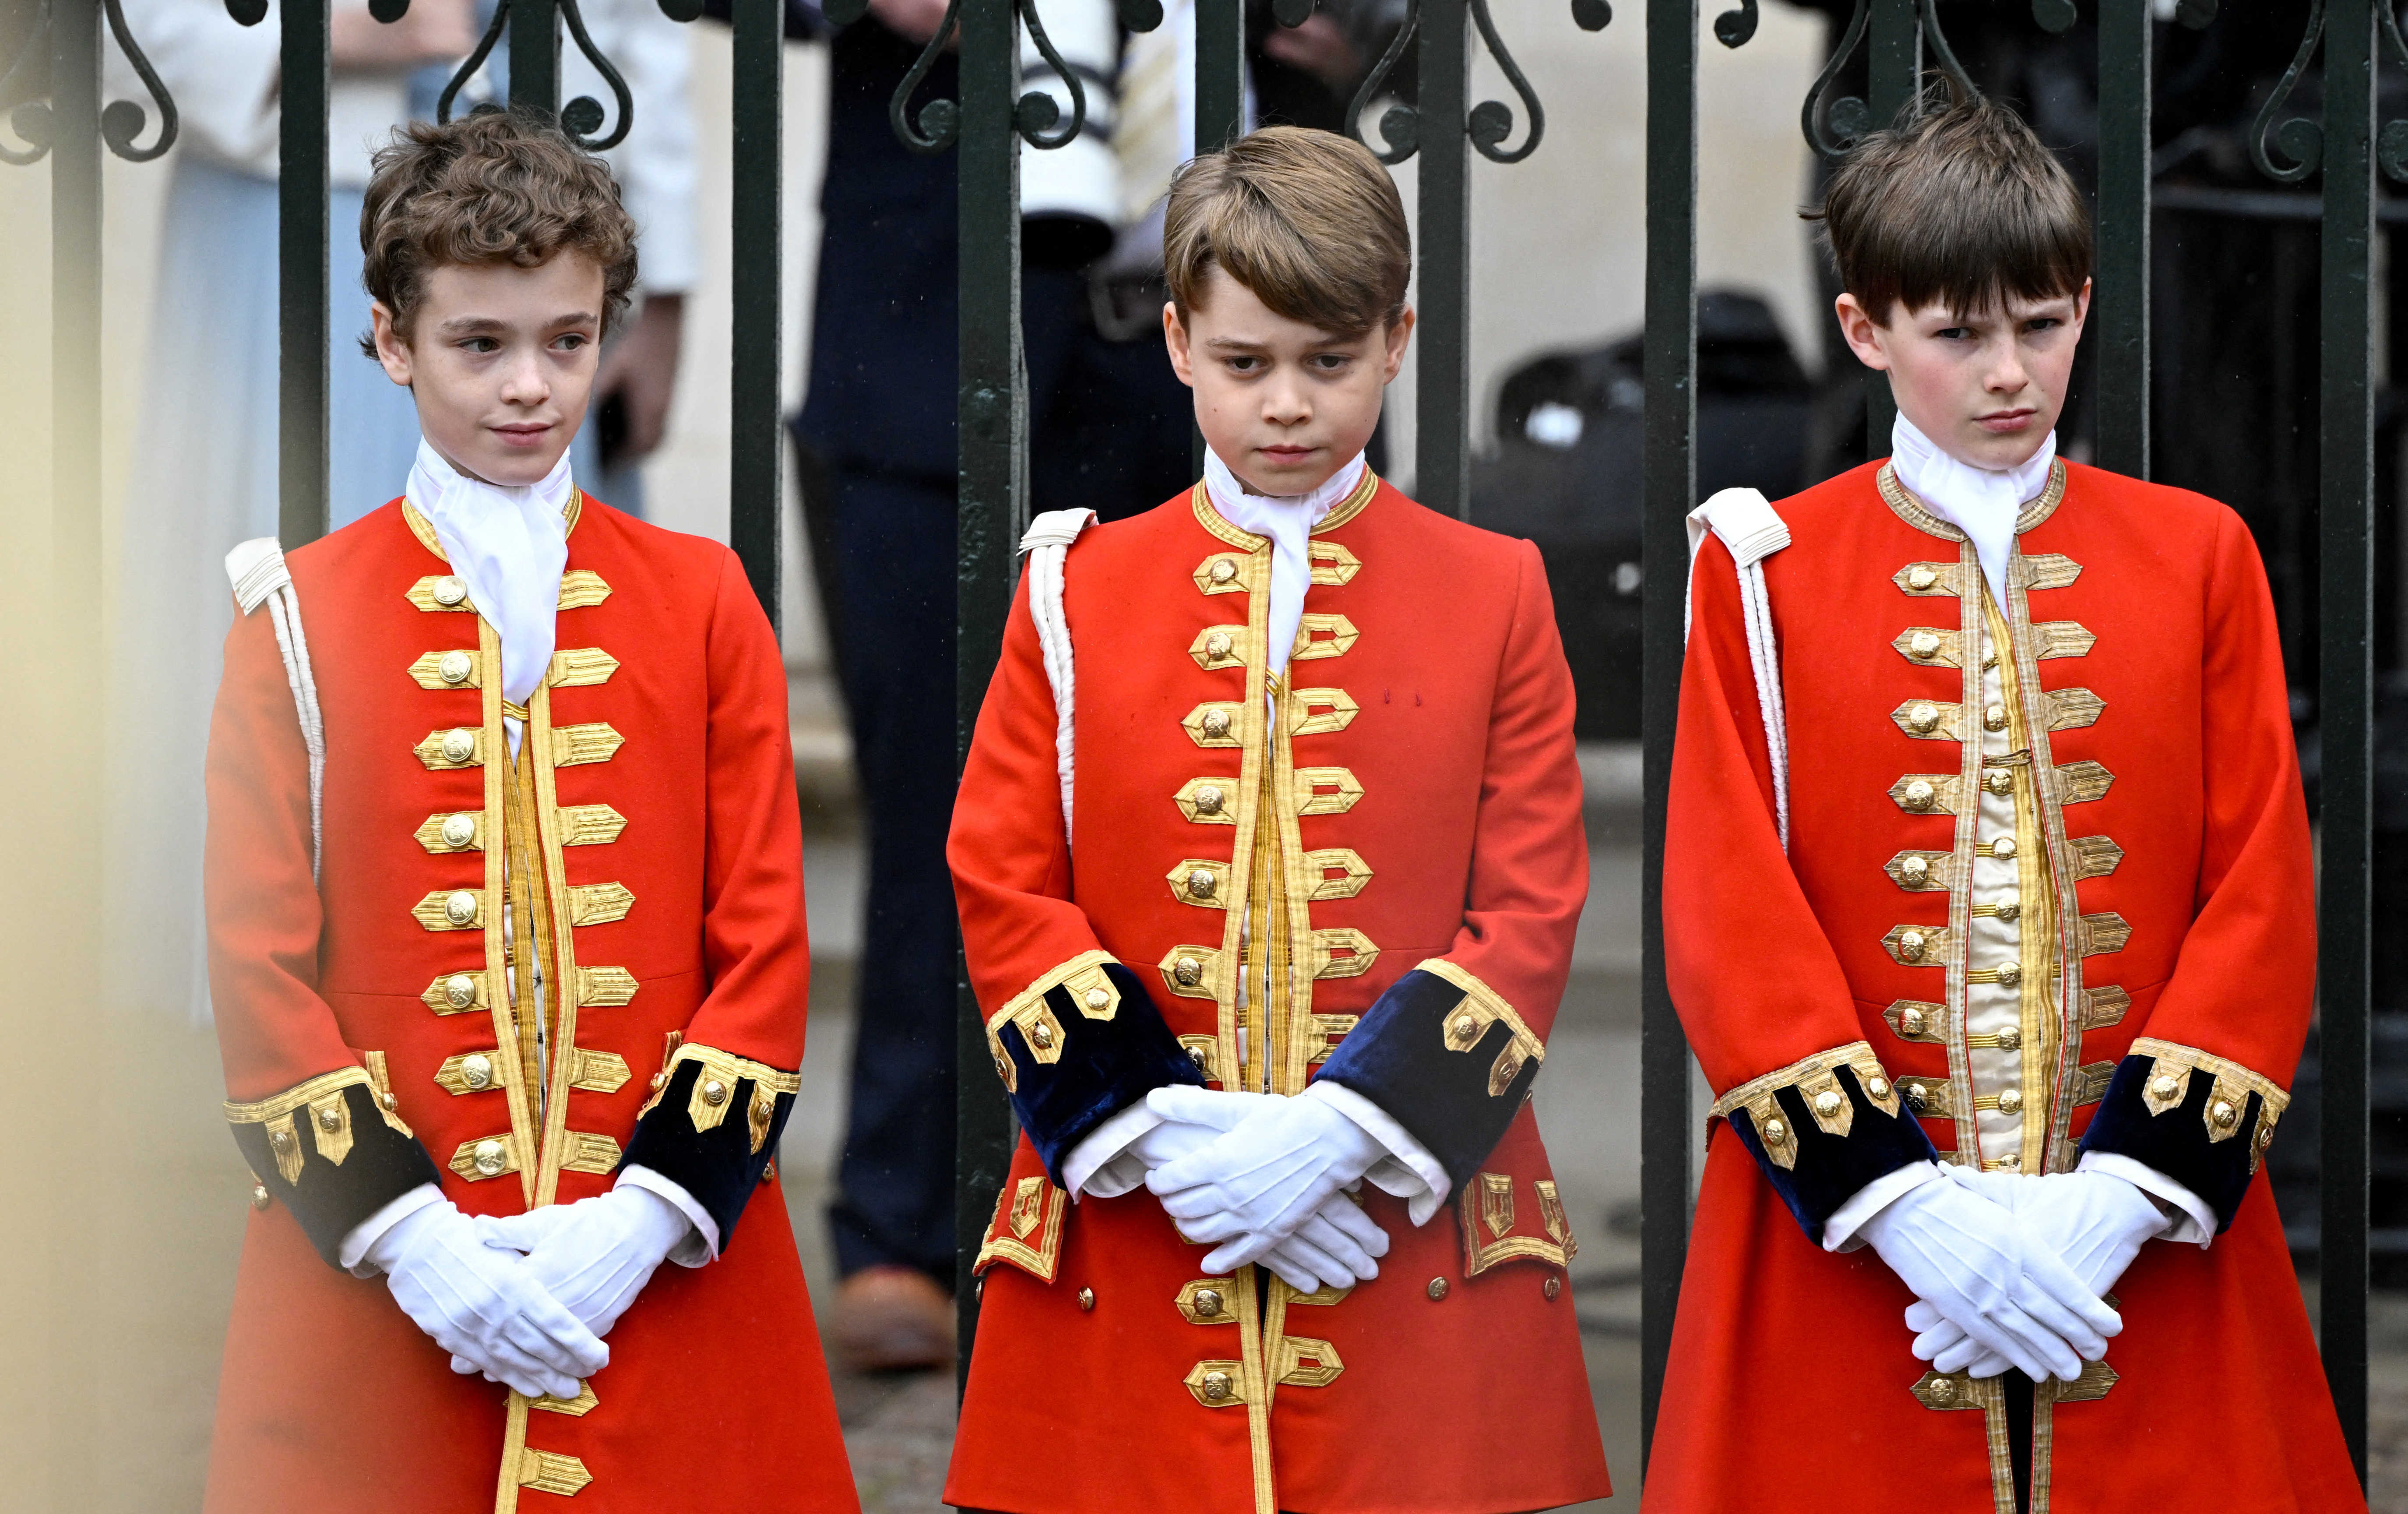 El príncipe Jorge de Gales (centro) de Gran Bretaña se encuentra en la Abadía de Westminster, antes de la coronación del rey Carlos III (TOBY MELVILLE / POOL / AFP)